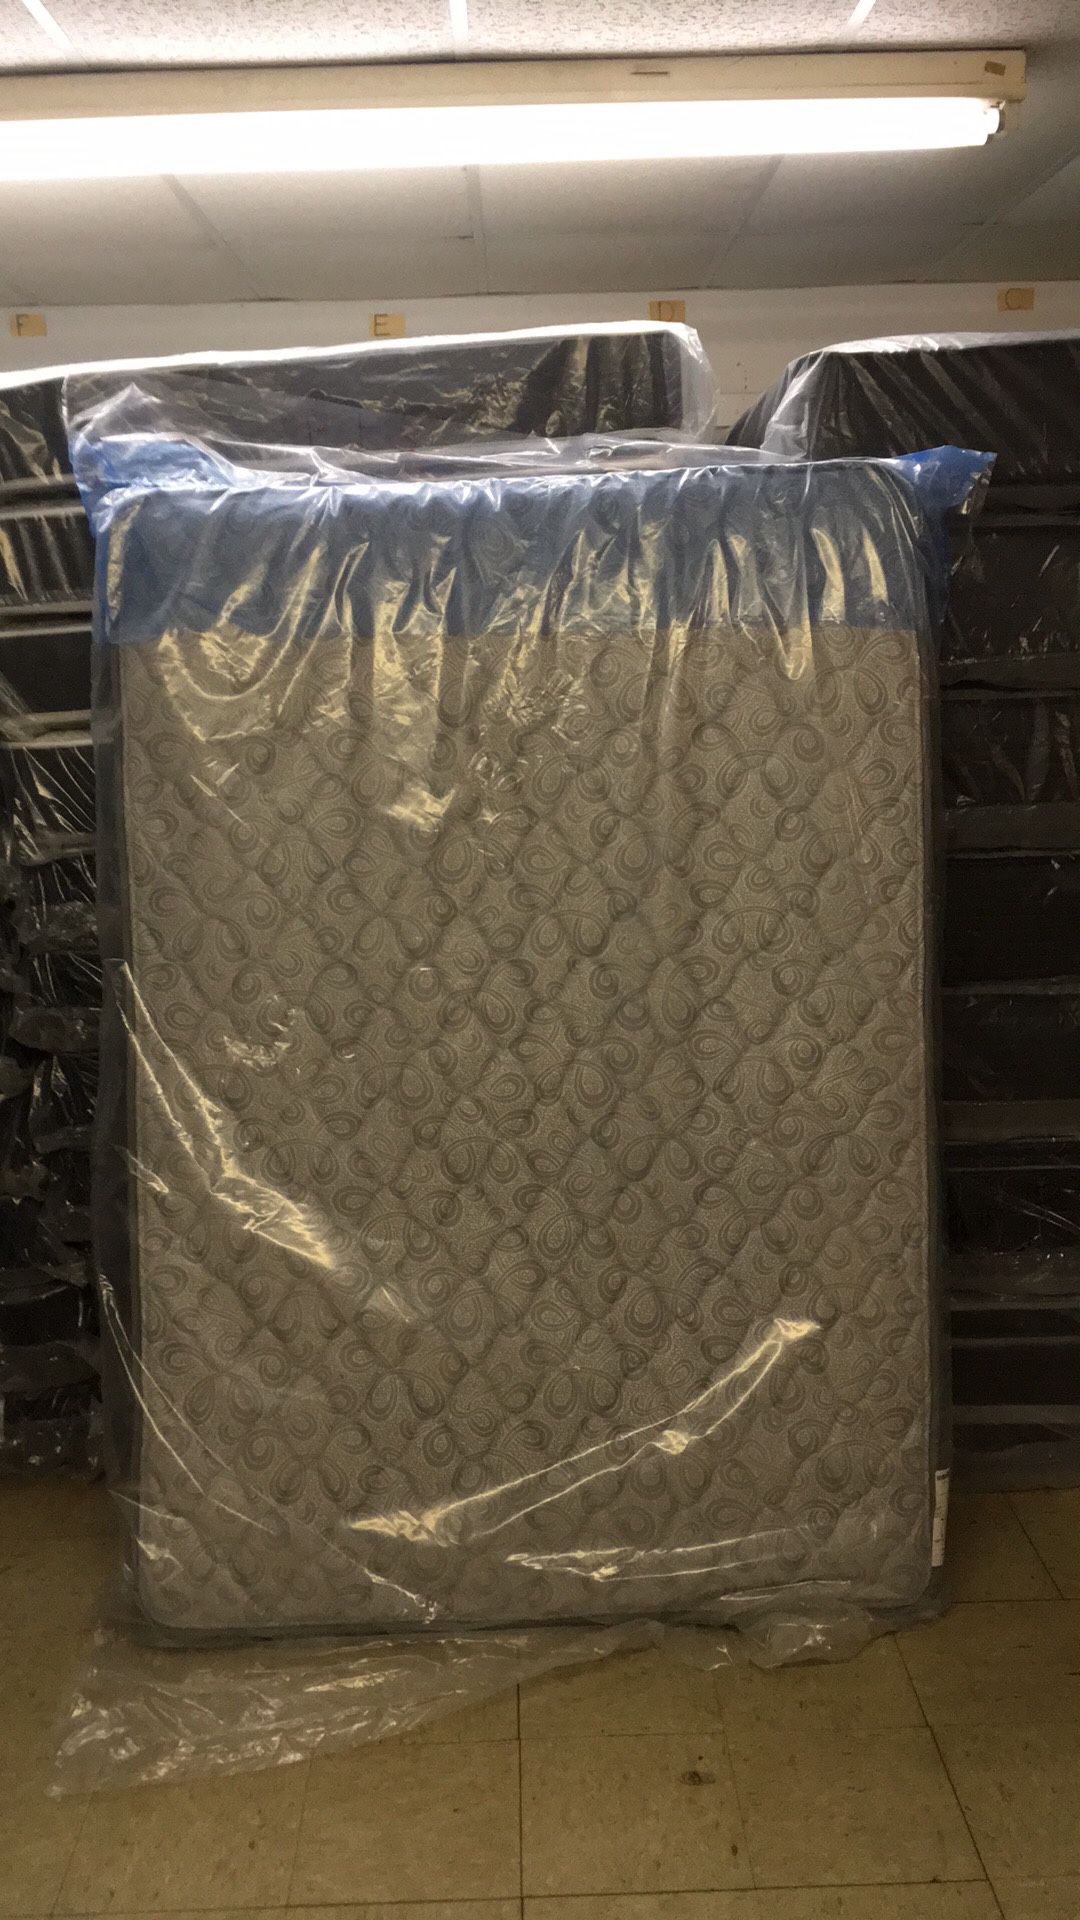 Brand new plush full size mattress